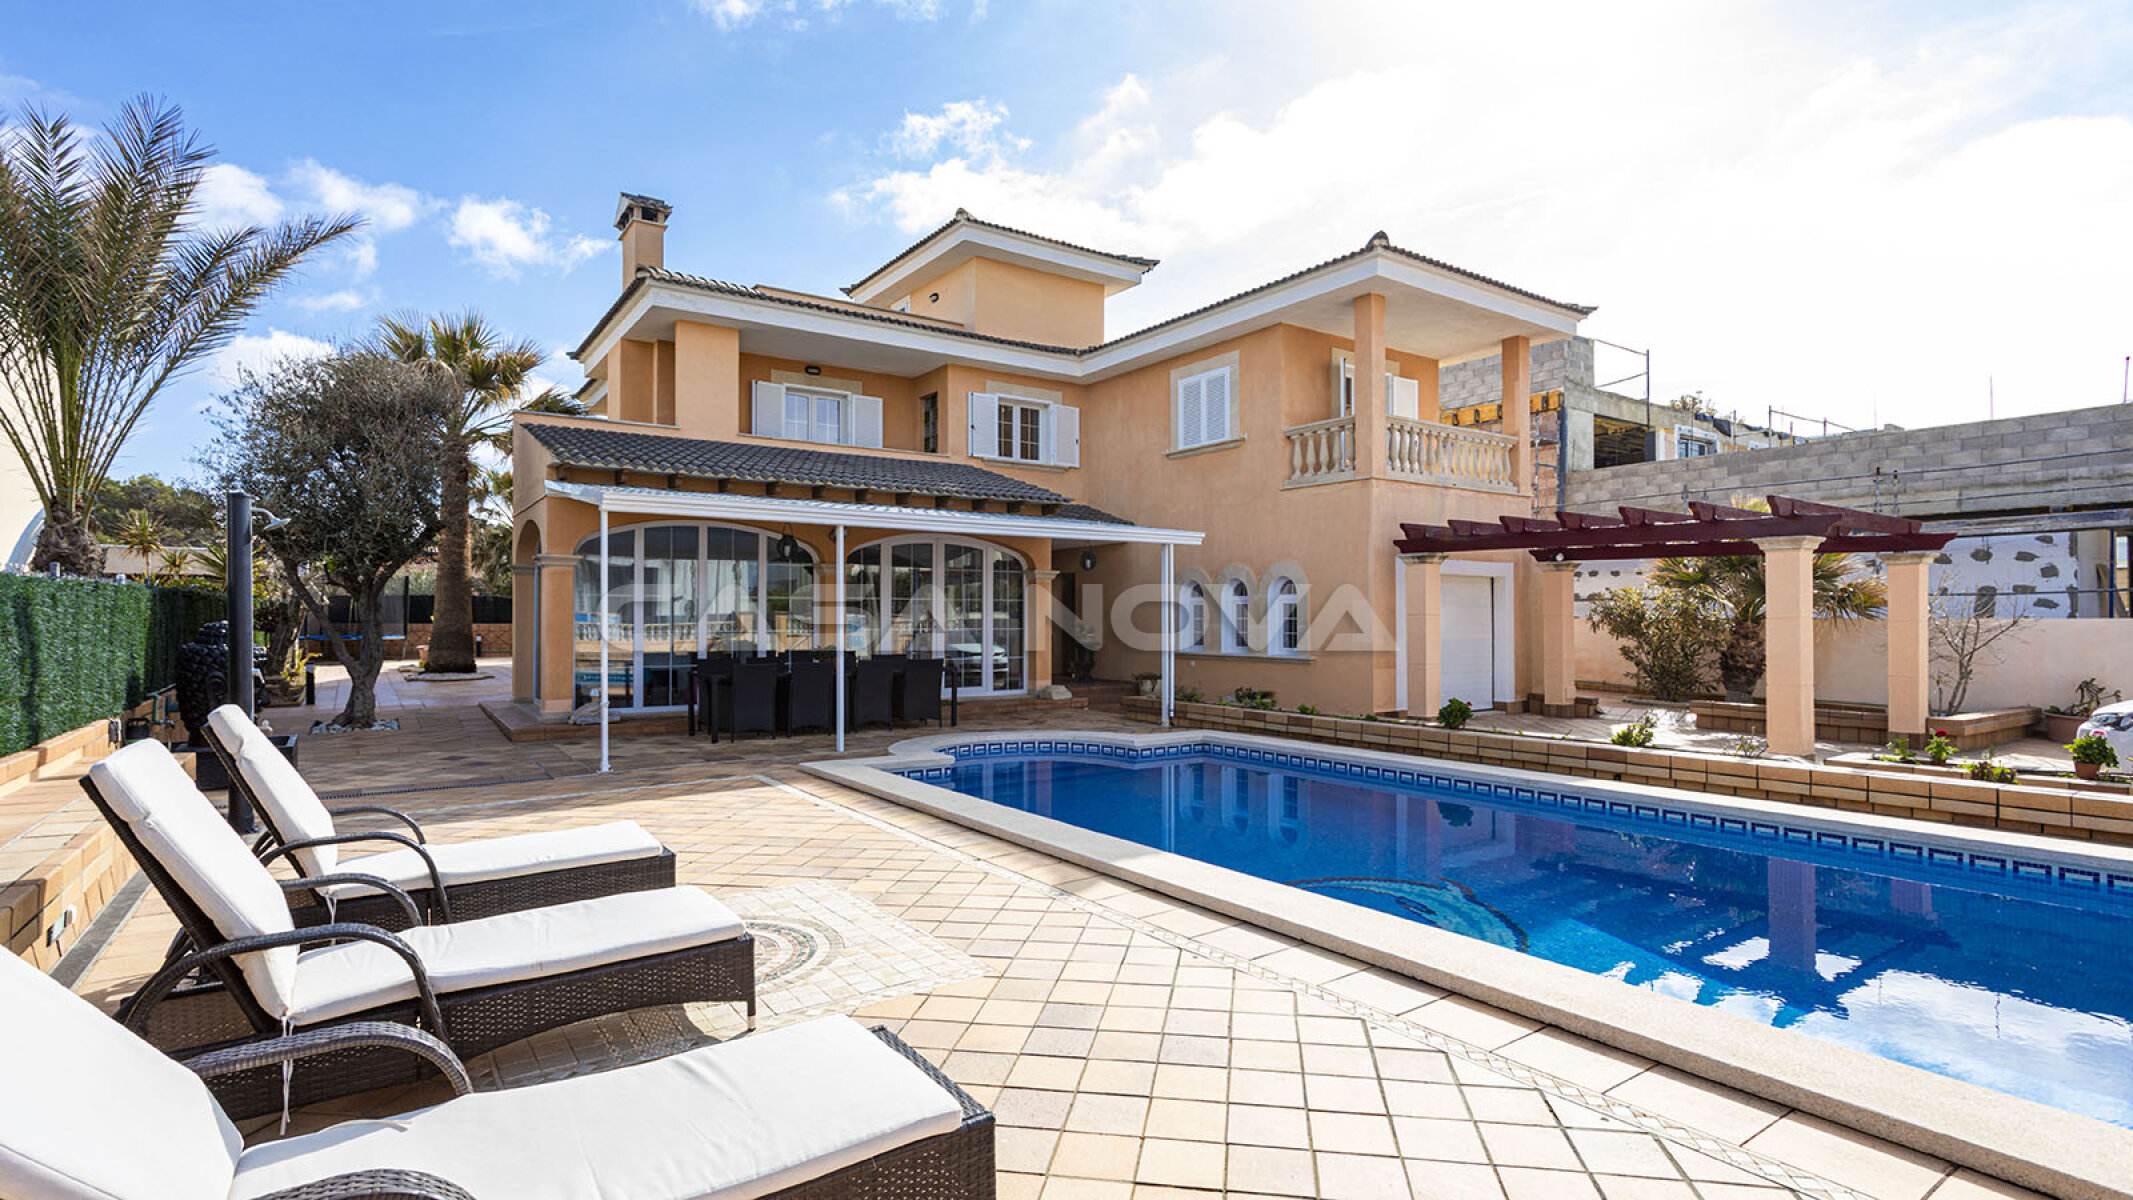 Mallorca Villa mit Pool in sehr exklusiven Wohngegend